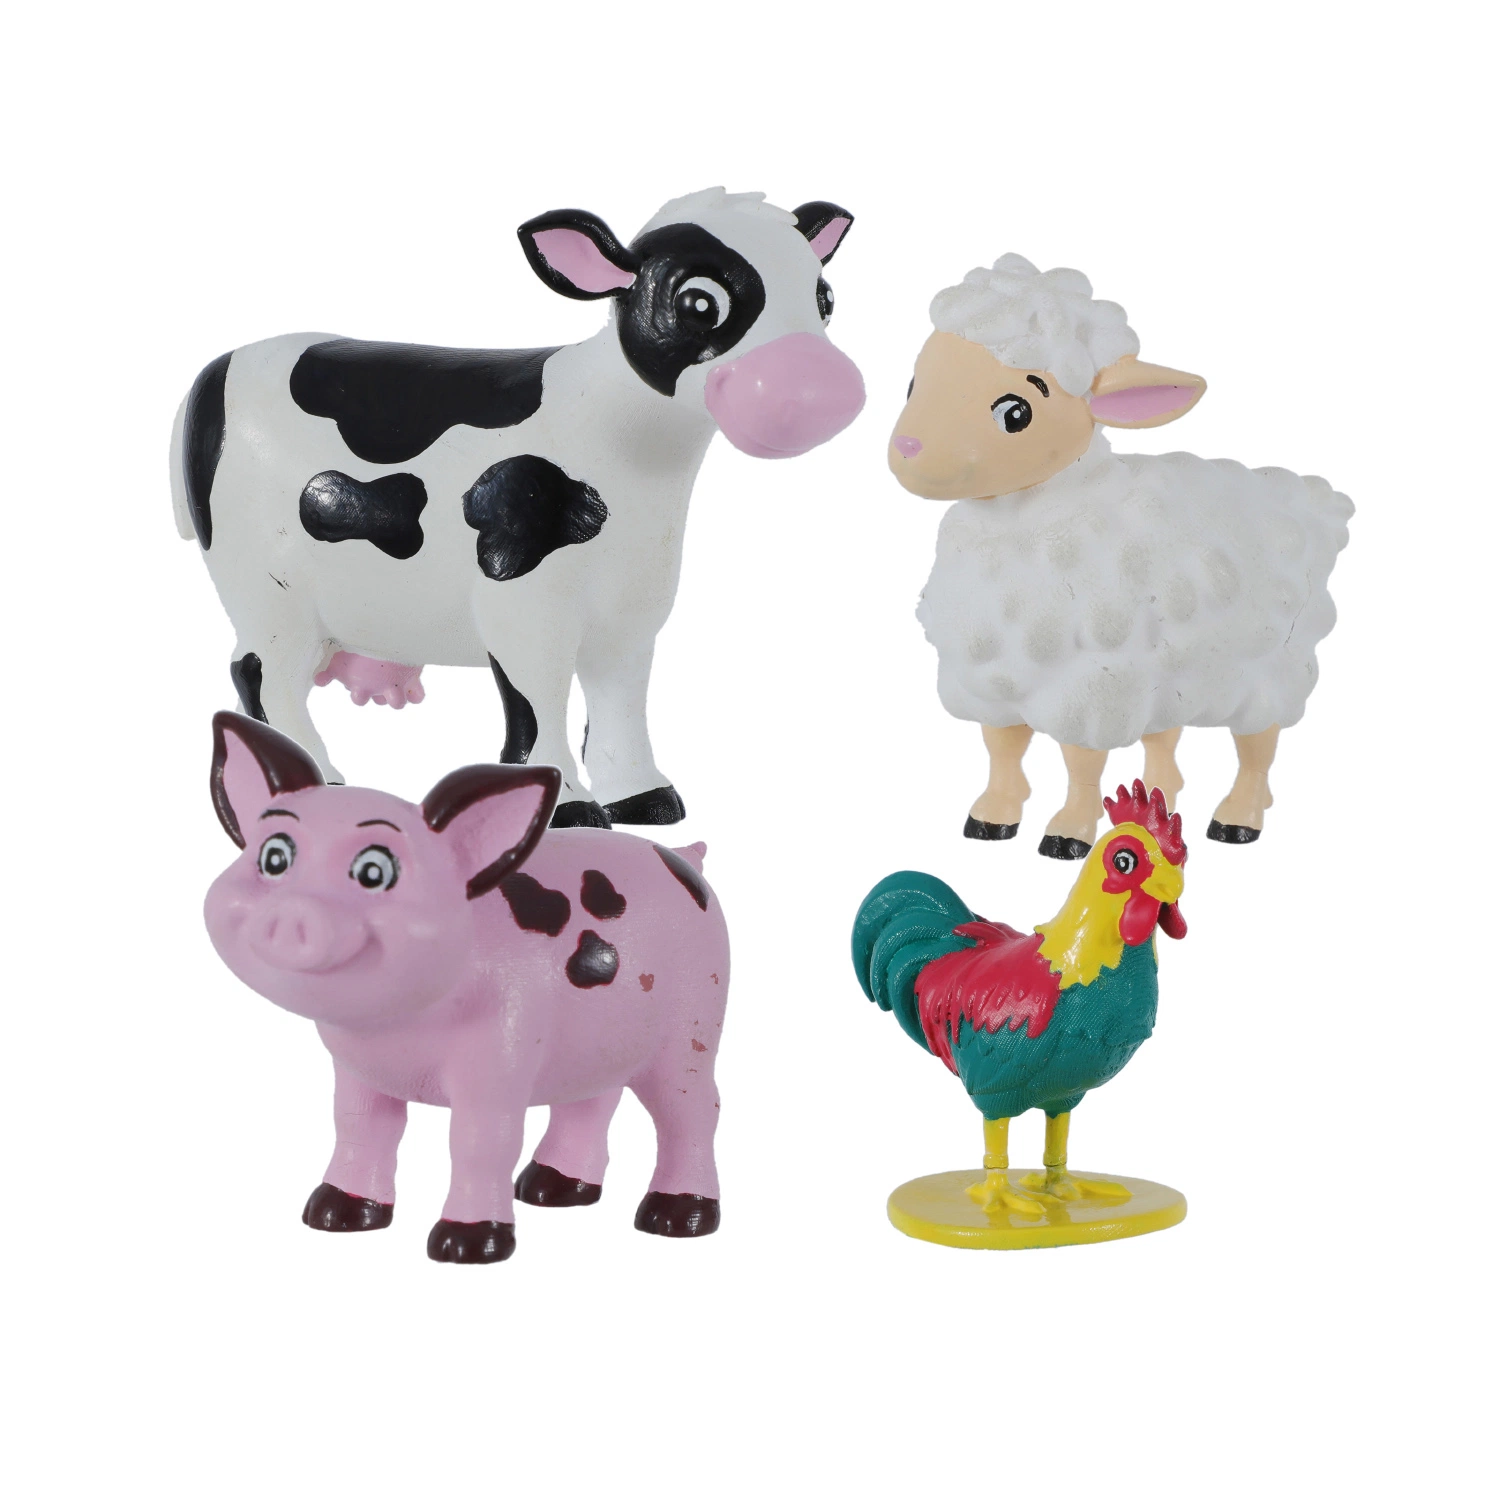 Plastique 5-6cm Petits jouets cadeaux en PVC Cartoon pour jouets promotionnels.